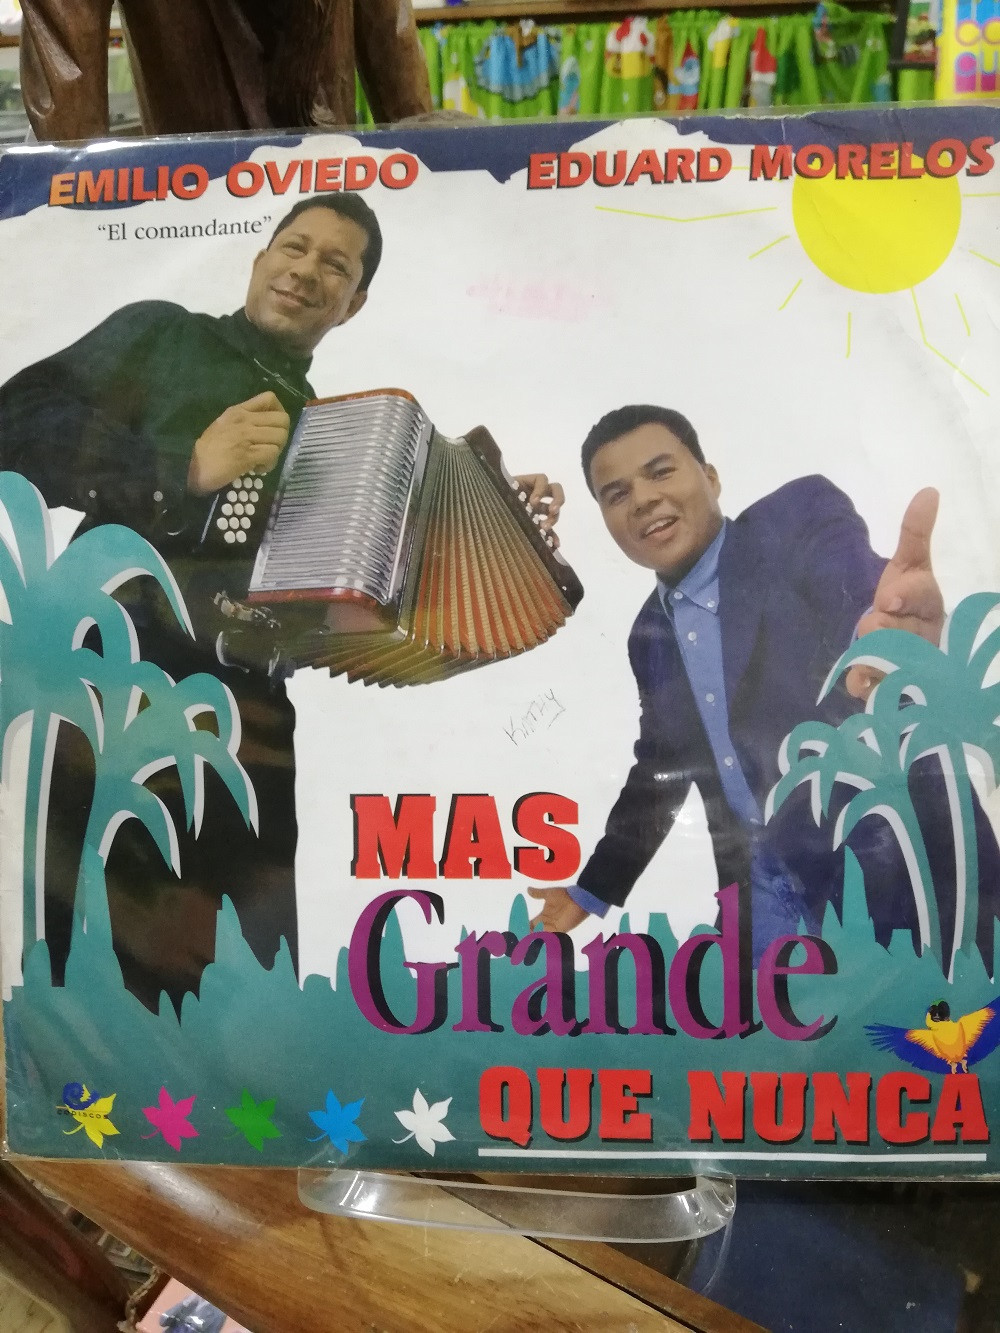 Imagen LP EMILIO OVIEDO "EL COMANDANTE" & EDUARDO MORELOS - MAS GRANDE QUE NUNCA 1